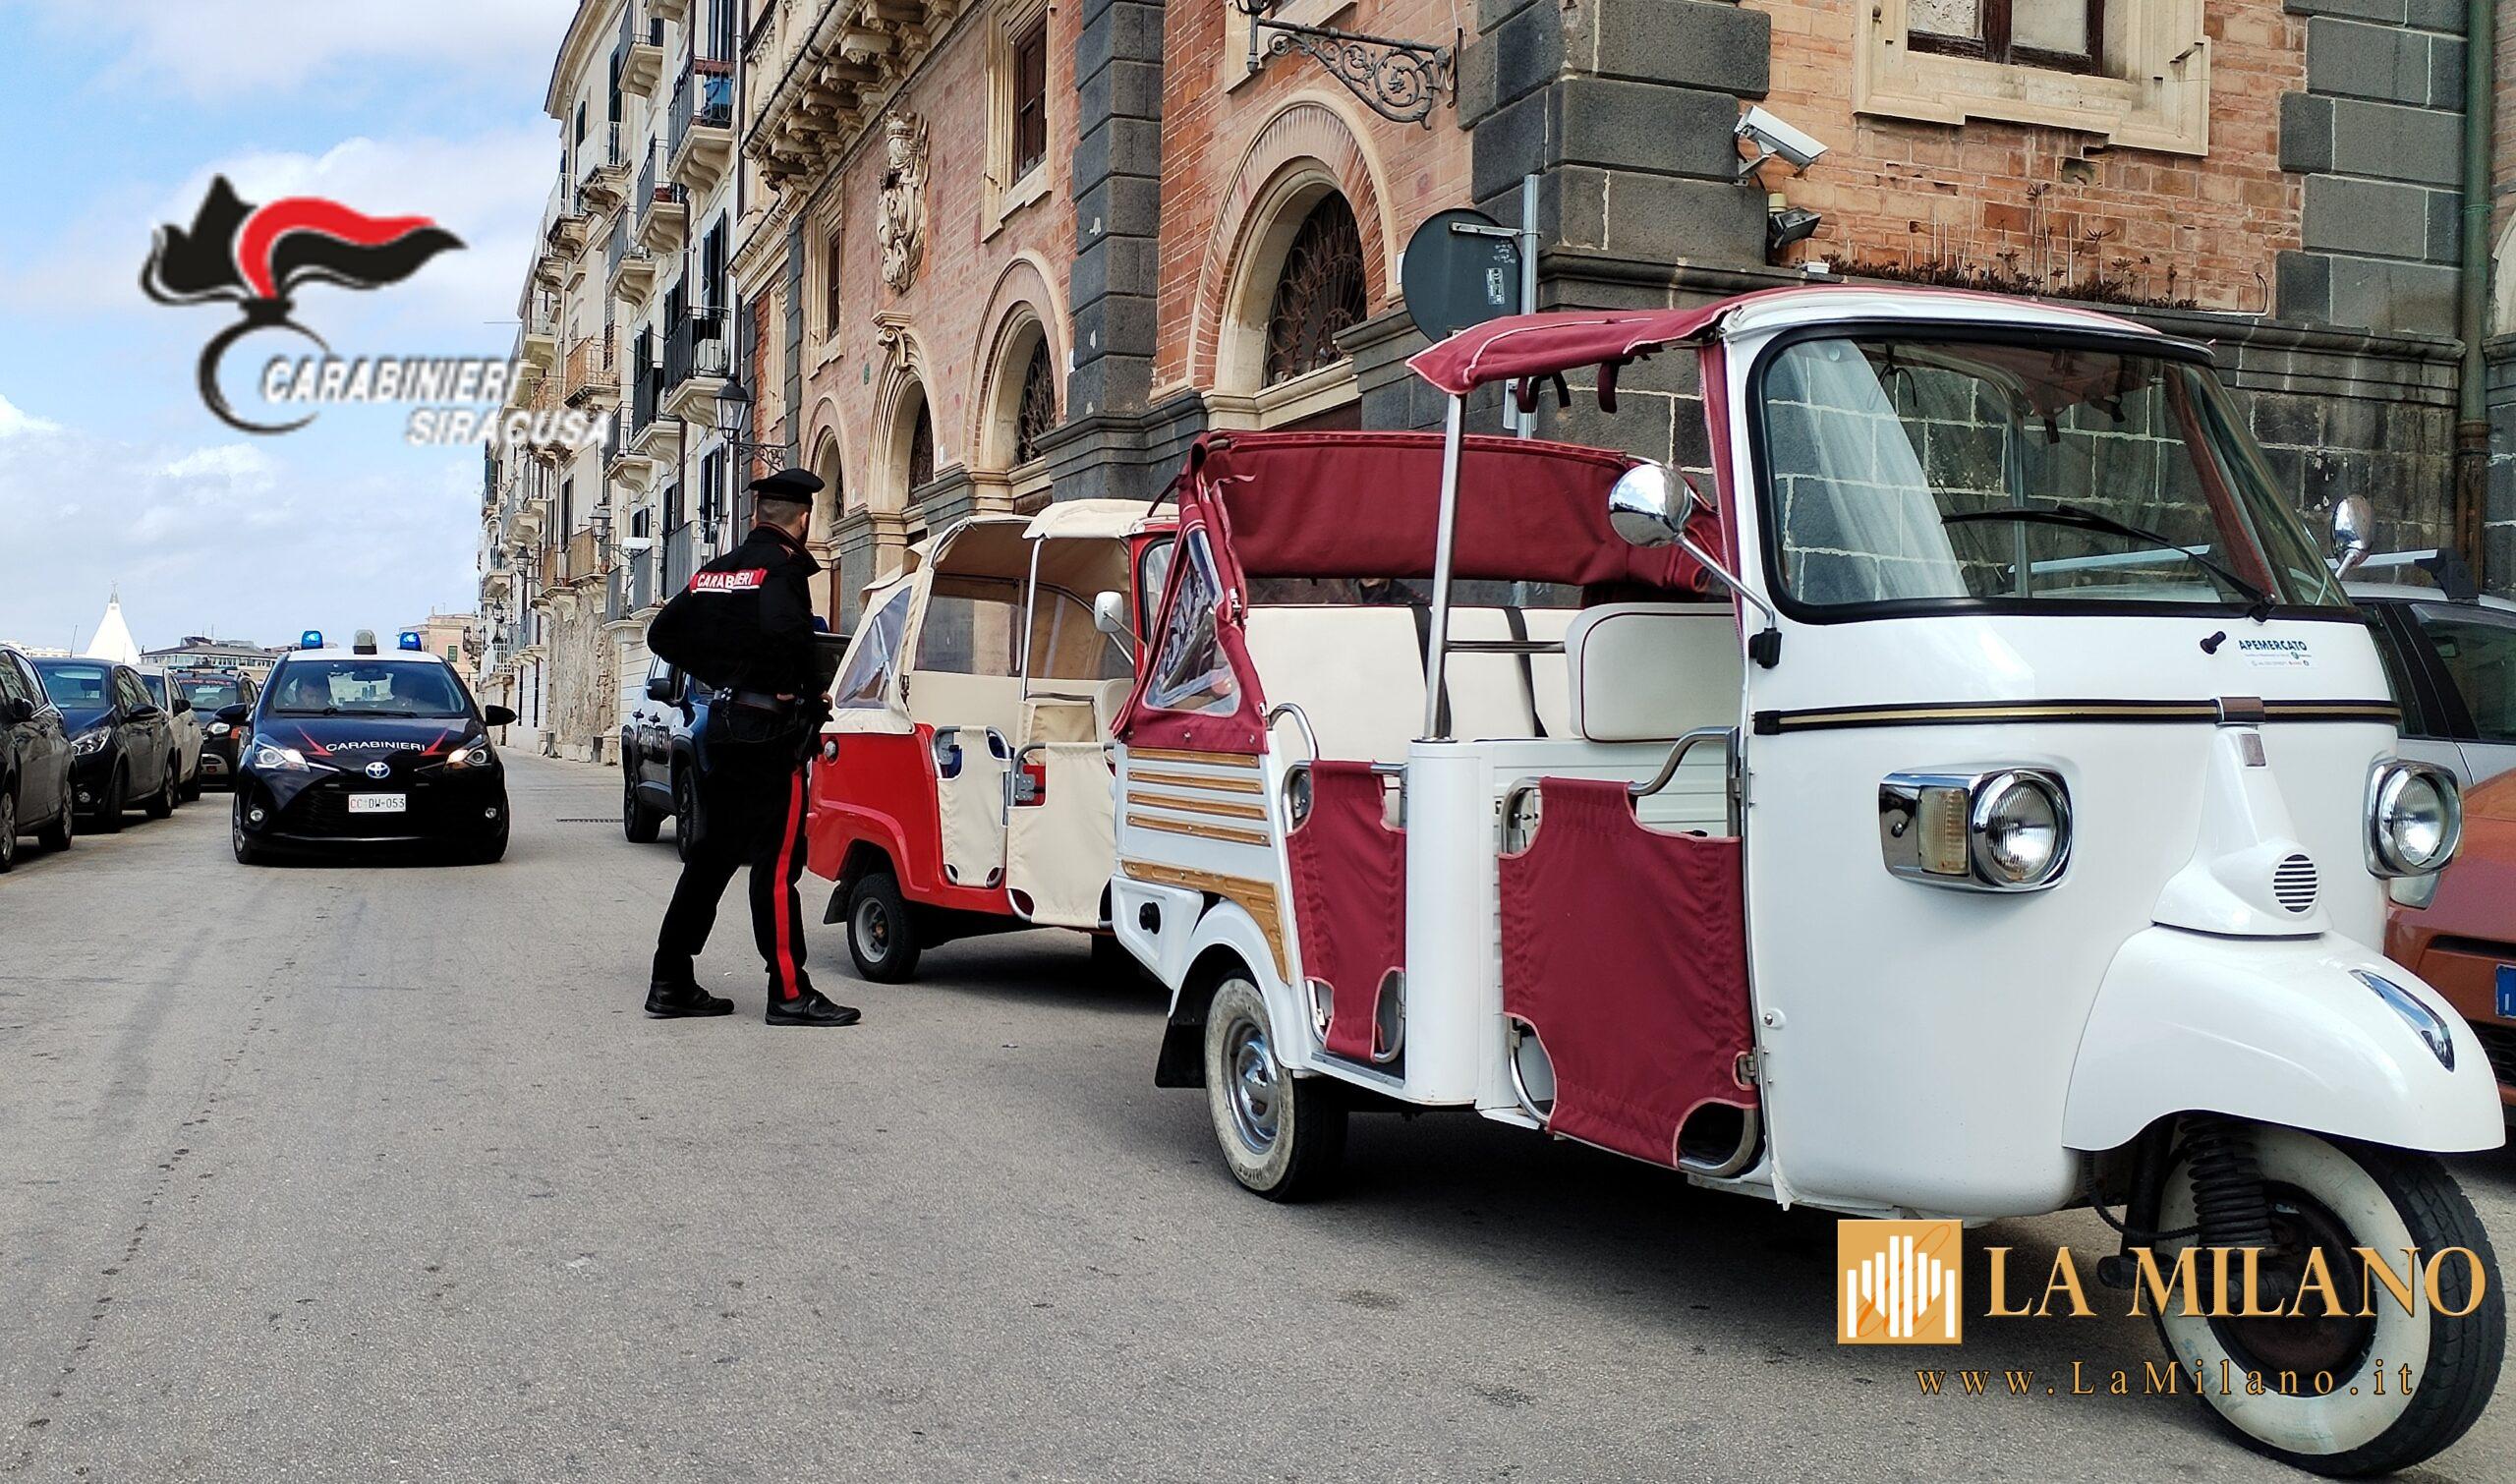 Siracusa-Ortigia, contrasto al servizio abusivo di taxi. I Carabinieri sequestrano 2 Ape calessini.